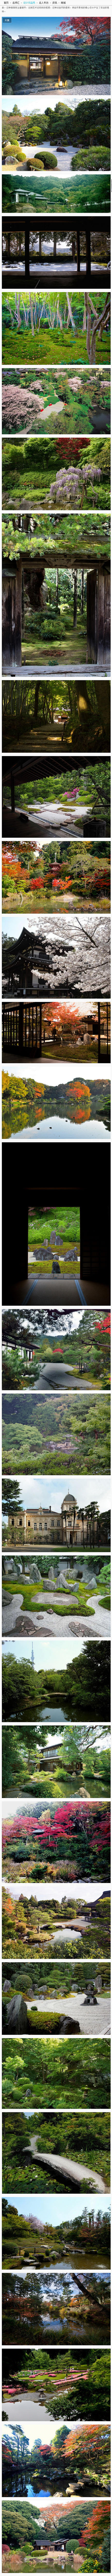 自然的膜拜  日式古典名园赏析